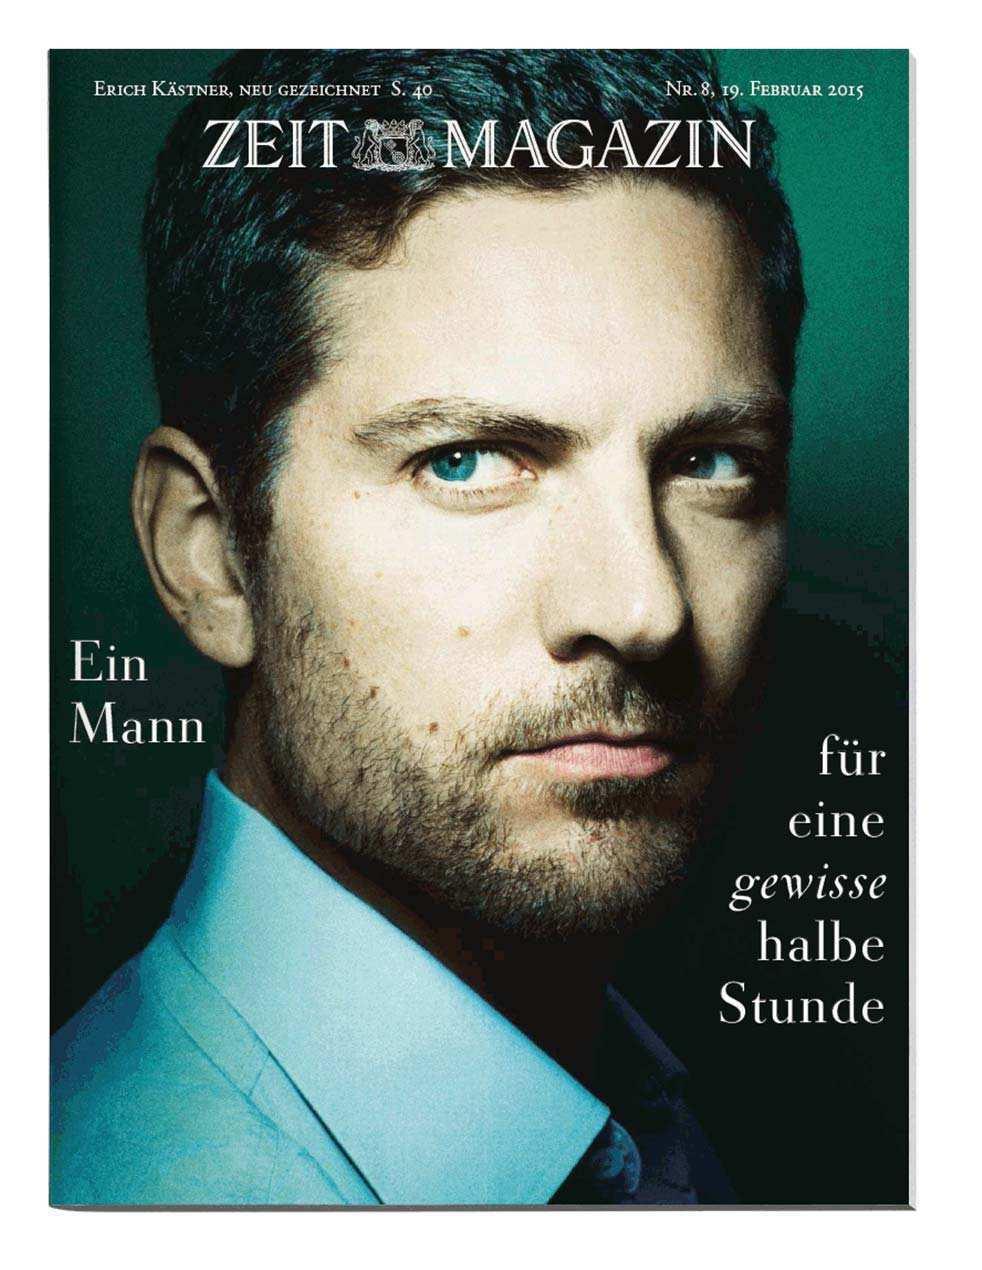 KURZ VORGESTELLT: ZEIT MAGAZIN ZEITmagazin Preisgekrönt und gern gelesen: Das bereits vielfach ausgezeichnete ZEITmagazin ist der emotionale, lebendige und persönliche Teil der ZEIT.